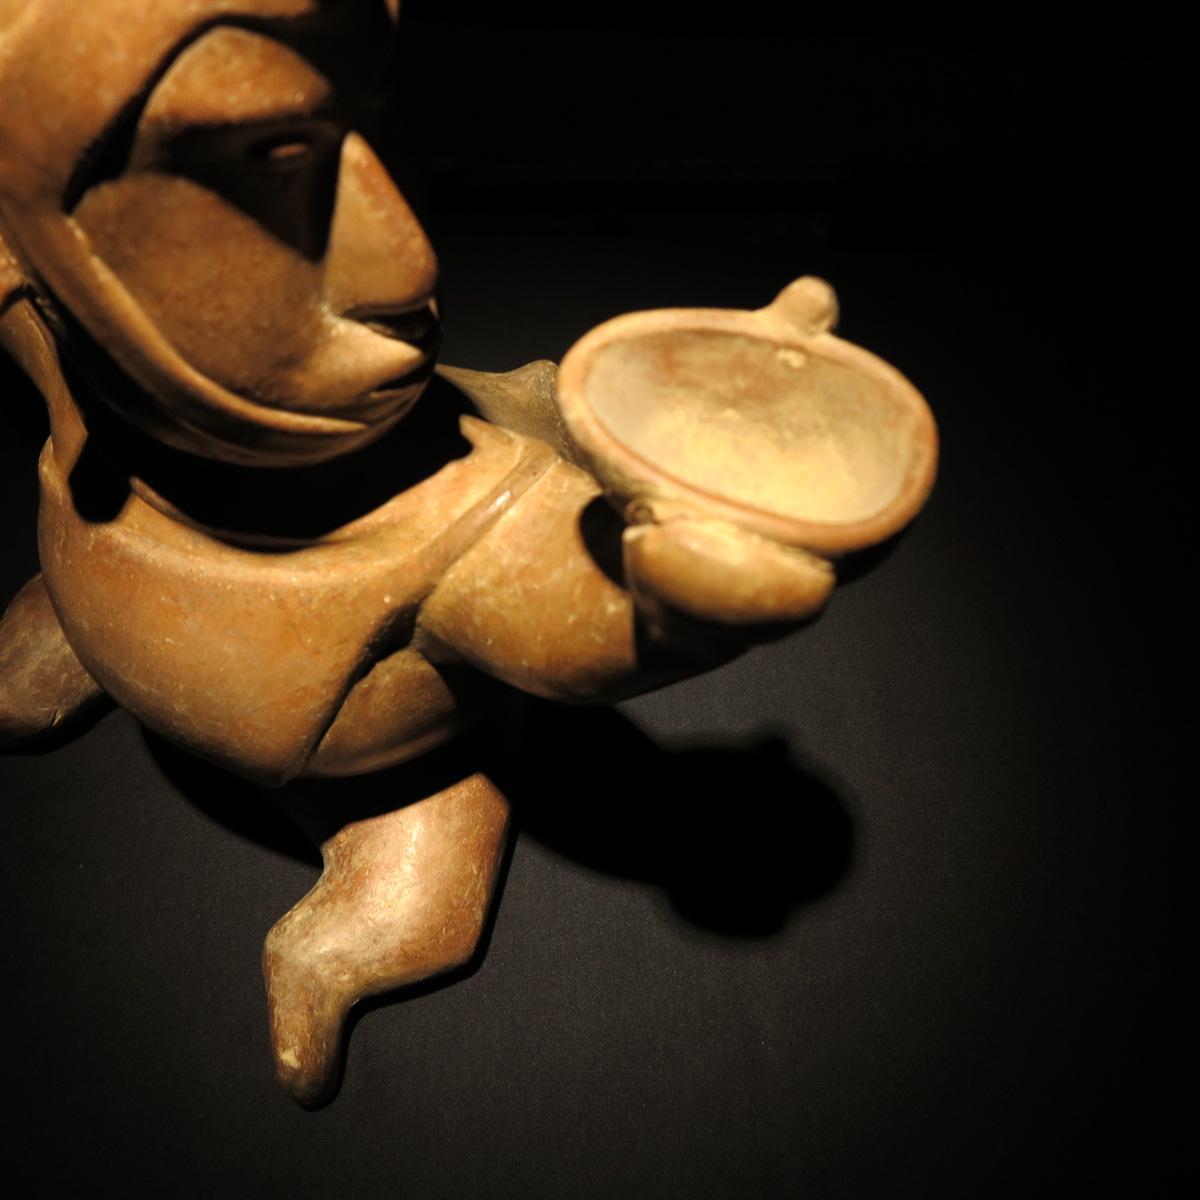 Sitzender Schamane
Kolima-Kultur
Mexiko
ca. 300 V. CHR. - 300 N. CHR.

Prä-Columbianisch, Westmexiko, Kolima, ca. 300 v. Chr. bis 300 n. Chr. Ein hohl gegossenes und stark gebranntes Terrakotta-Gefäß in Form einer buckligen Schamanenfigur.